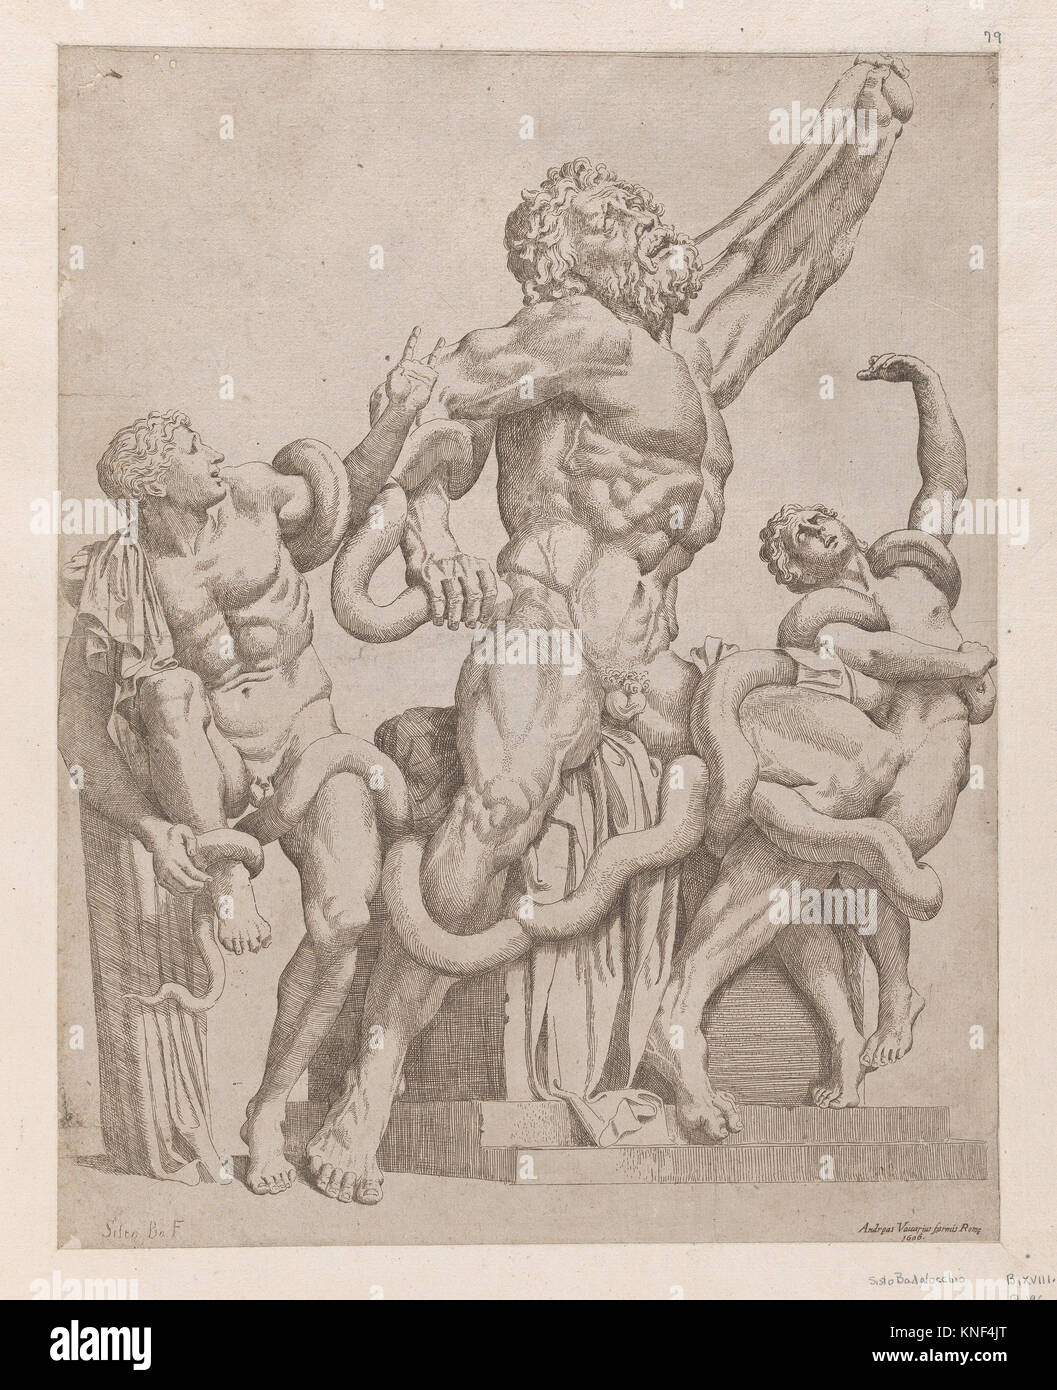 Speculum Romanae Magnificentiae: Laocoonte. Series/Cartera: Speculum Romanae Magnificentiae; Artista: Sisto Badalocchio, Parma italiano (1585-después de Foto de stock